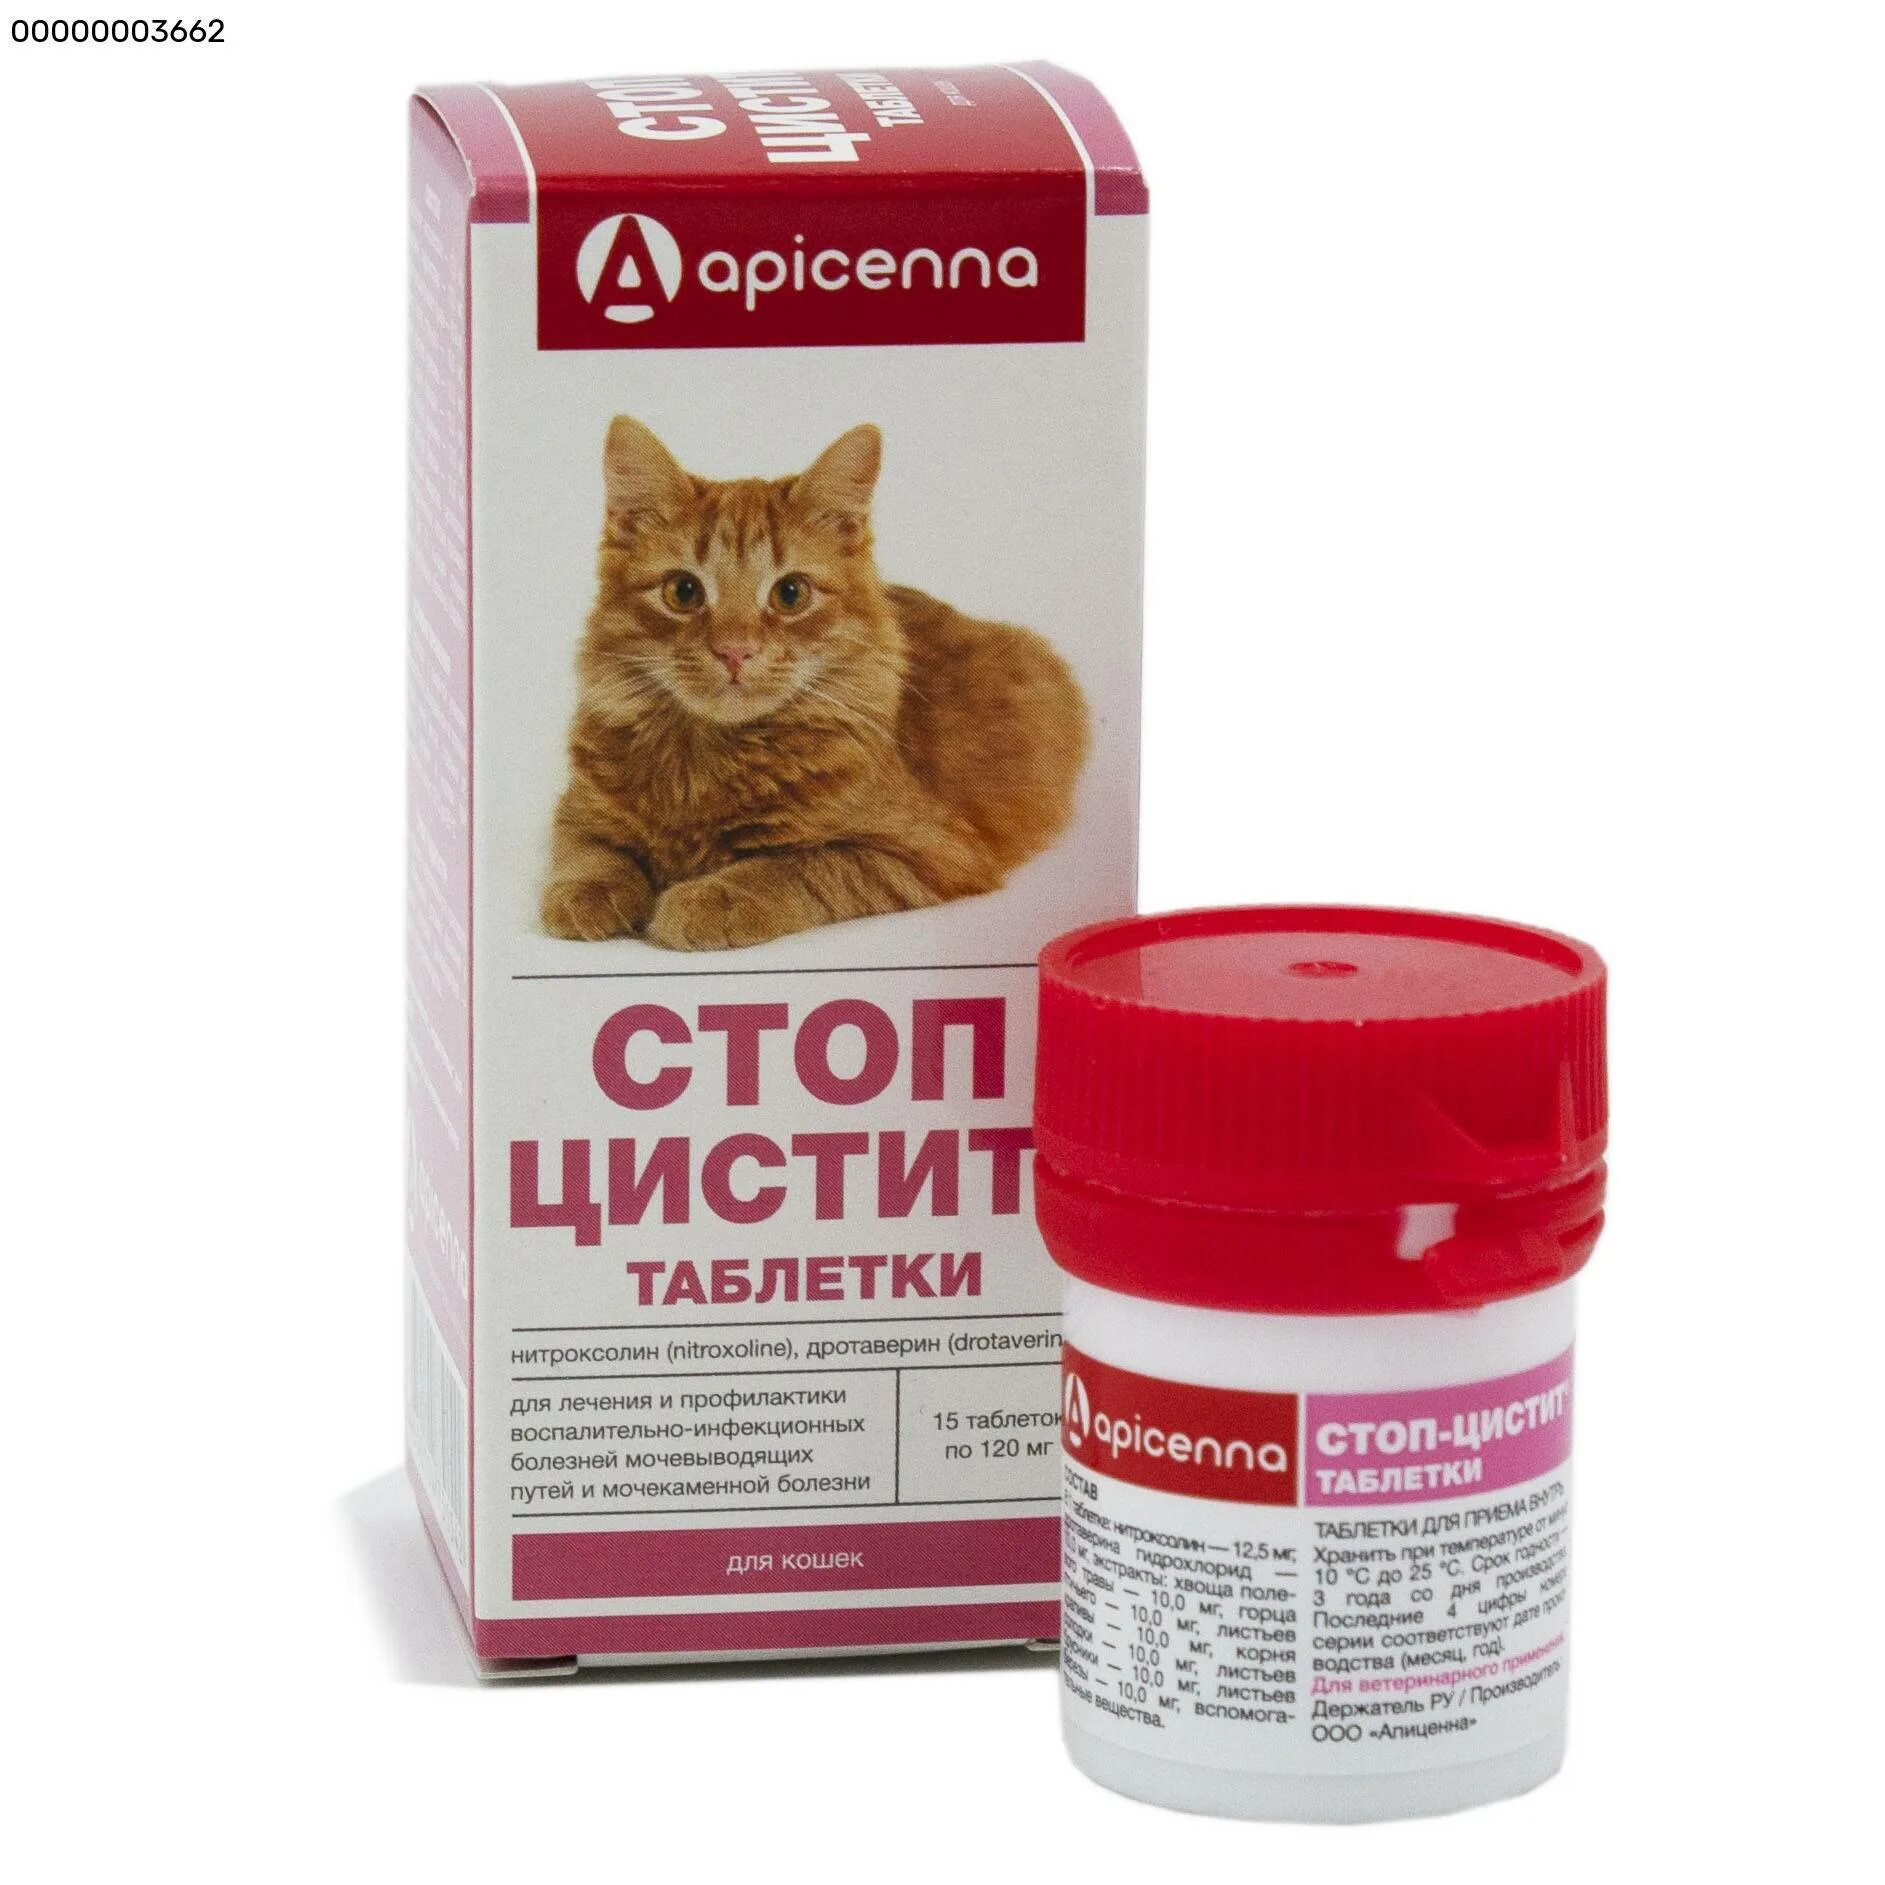 Купить стоп цистит таблетки. Стоп-цистит био (для кошек), 30 мл. Стоп-цистит таблетки для кошек, apicenna, 500 мг*30 таб. Стоп-цистит суспензия для кошек лекарство. Стоп цистит био таблетки для кошек.